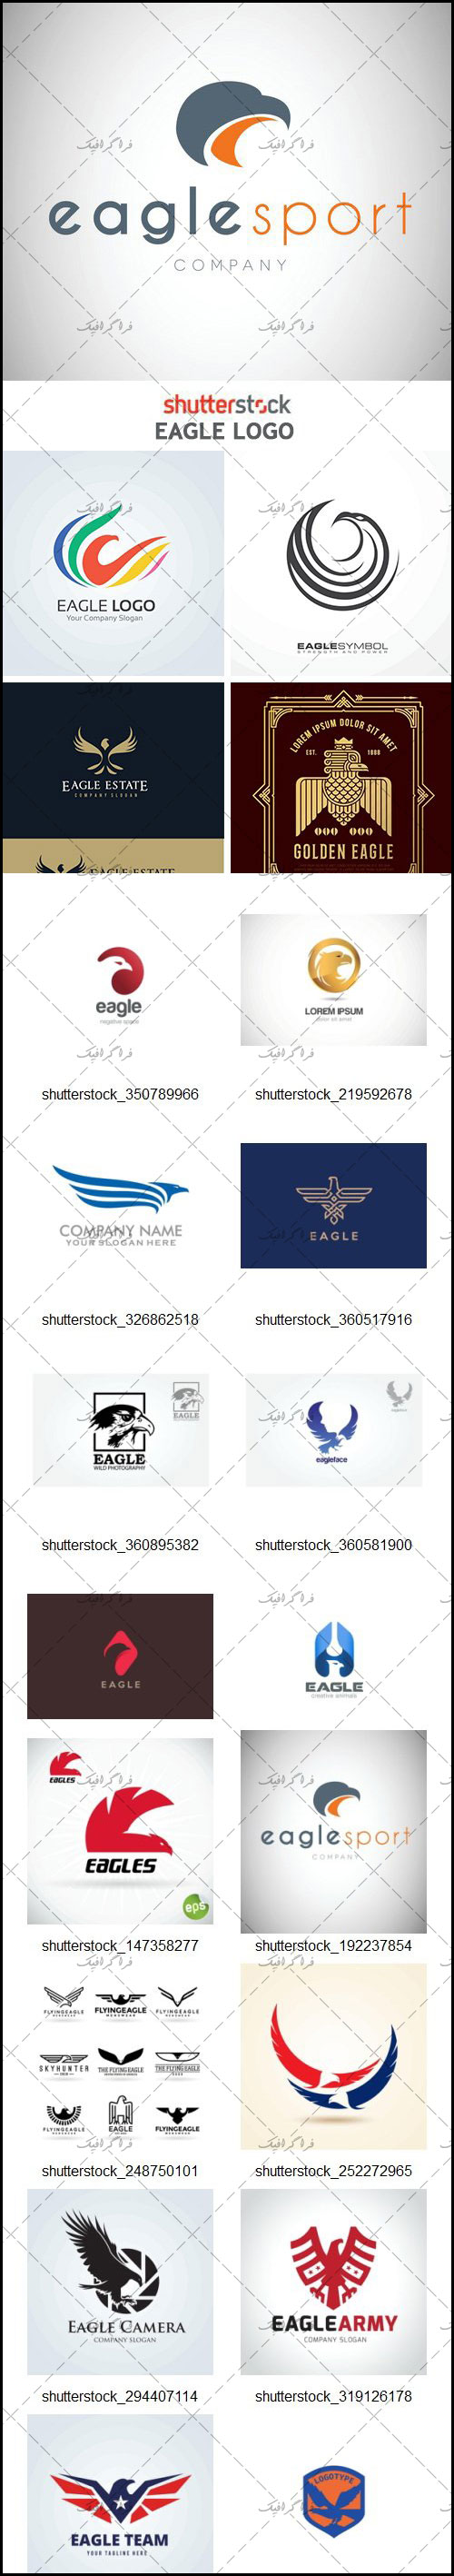 دانلود لوگو های عقاب - Eagle Logos